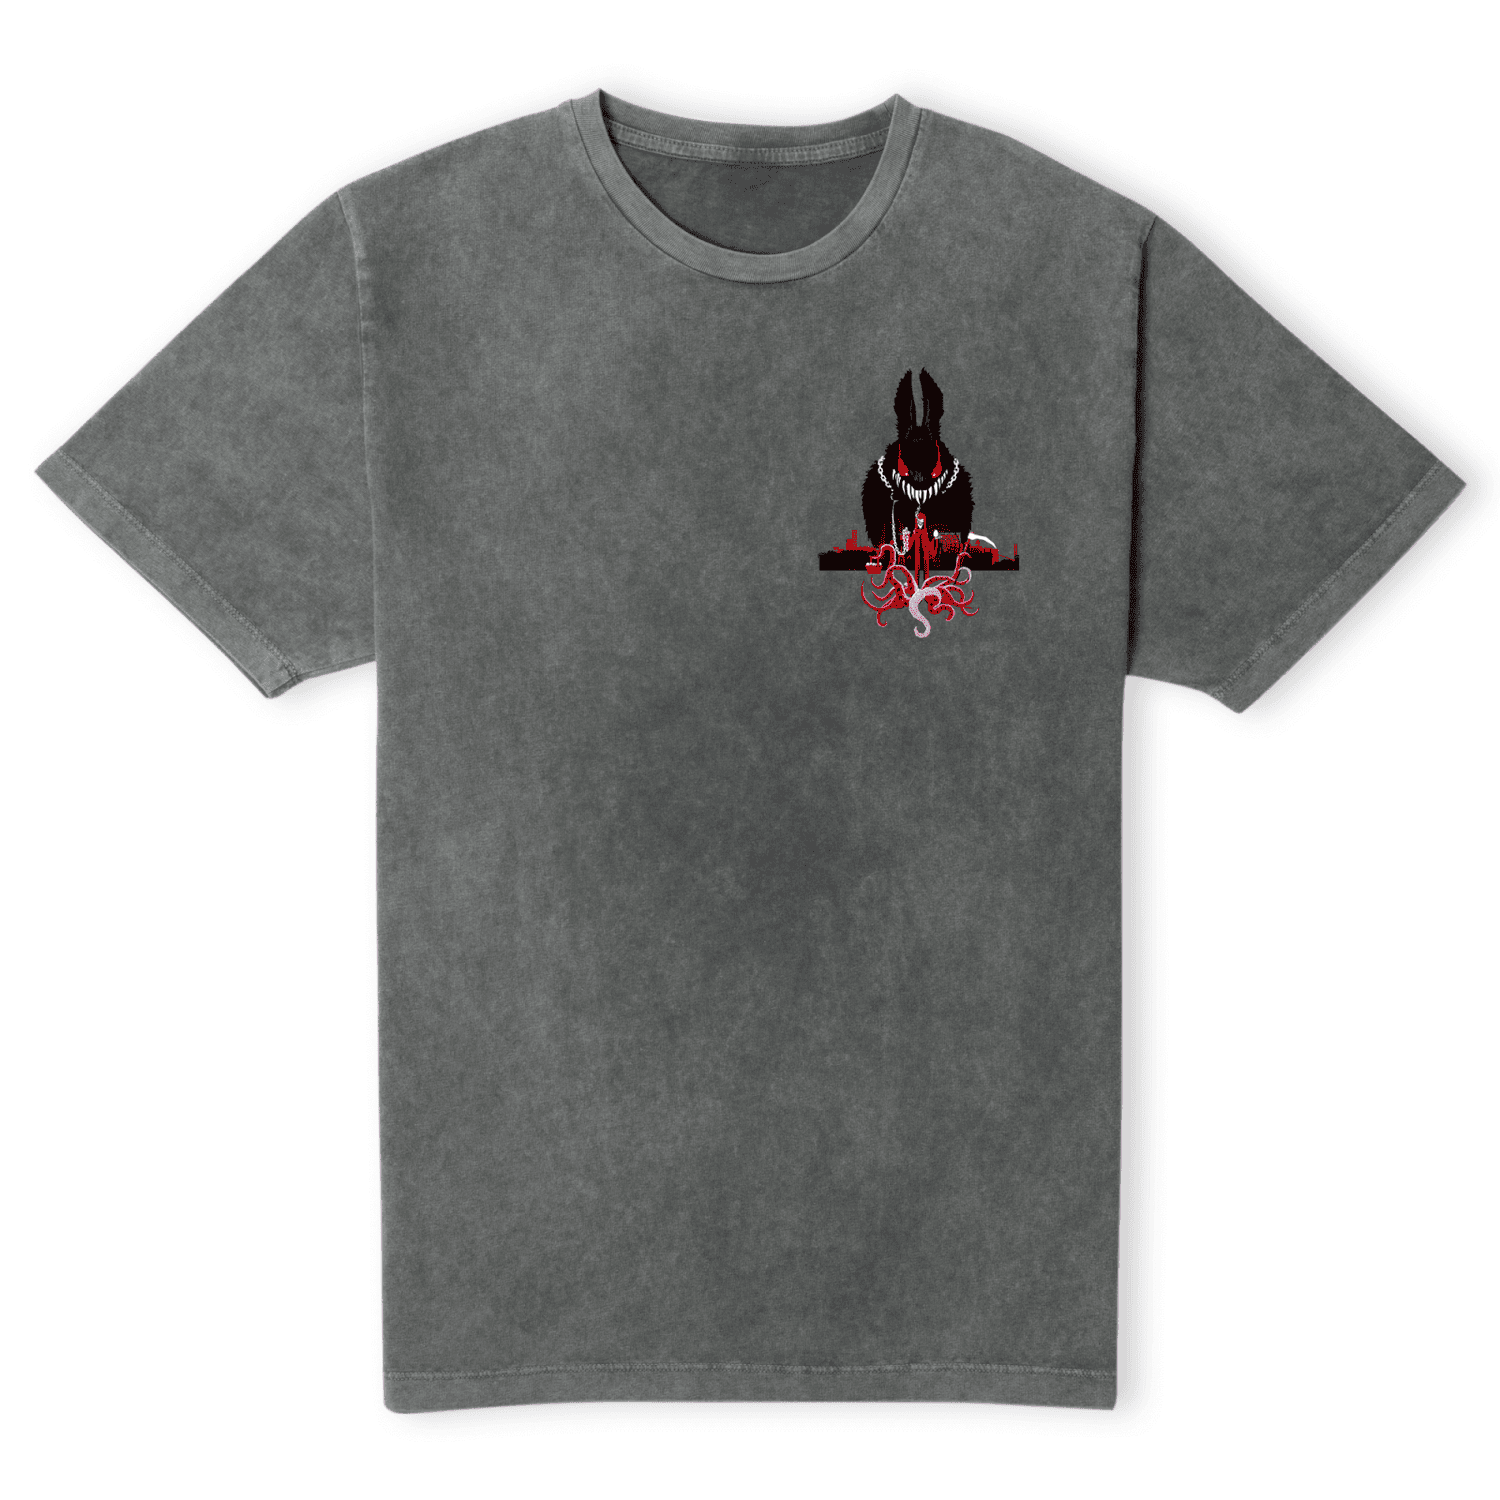 Grimmfest 2022 Easter Bunny Unisex T-Shirt - Black Acid Wash